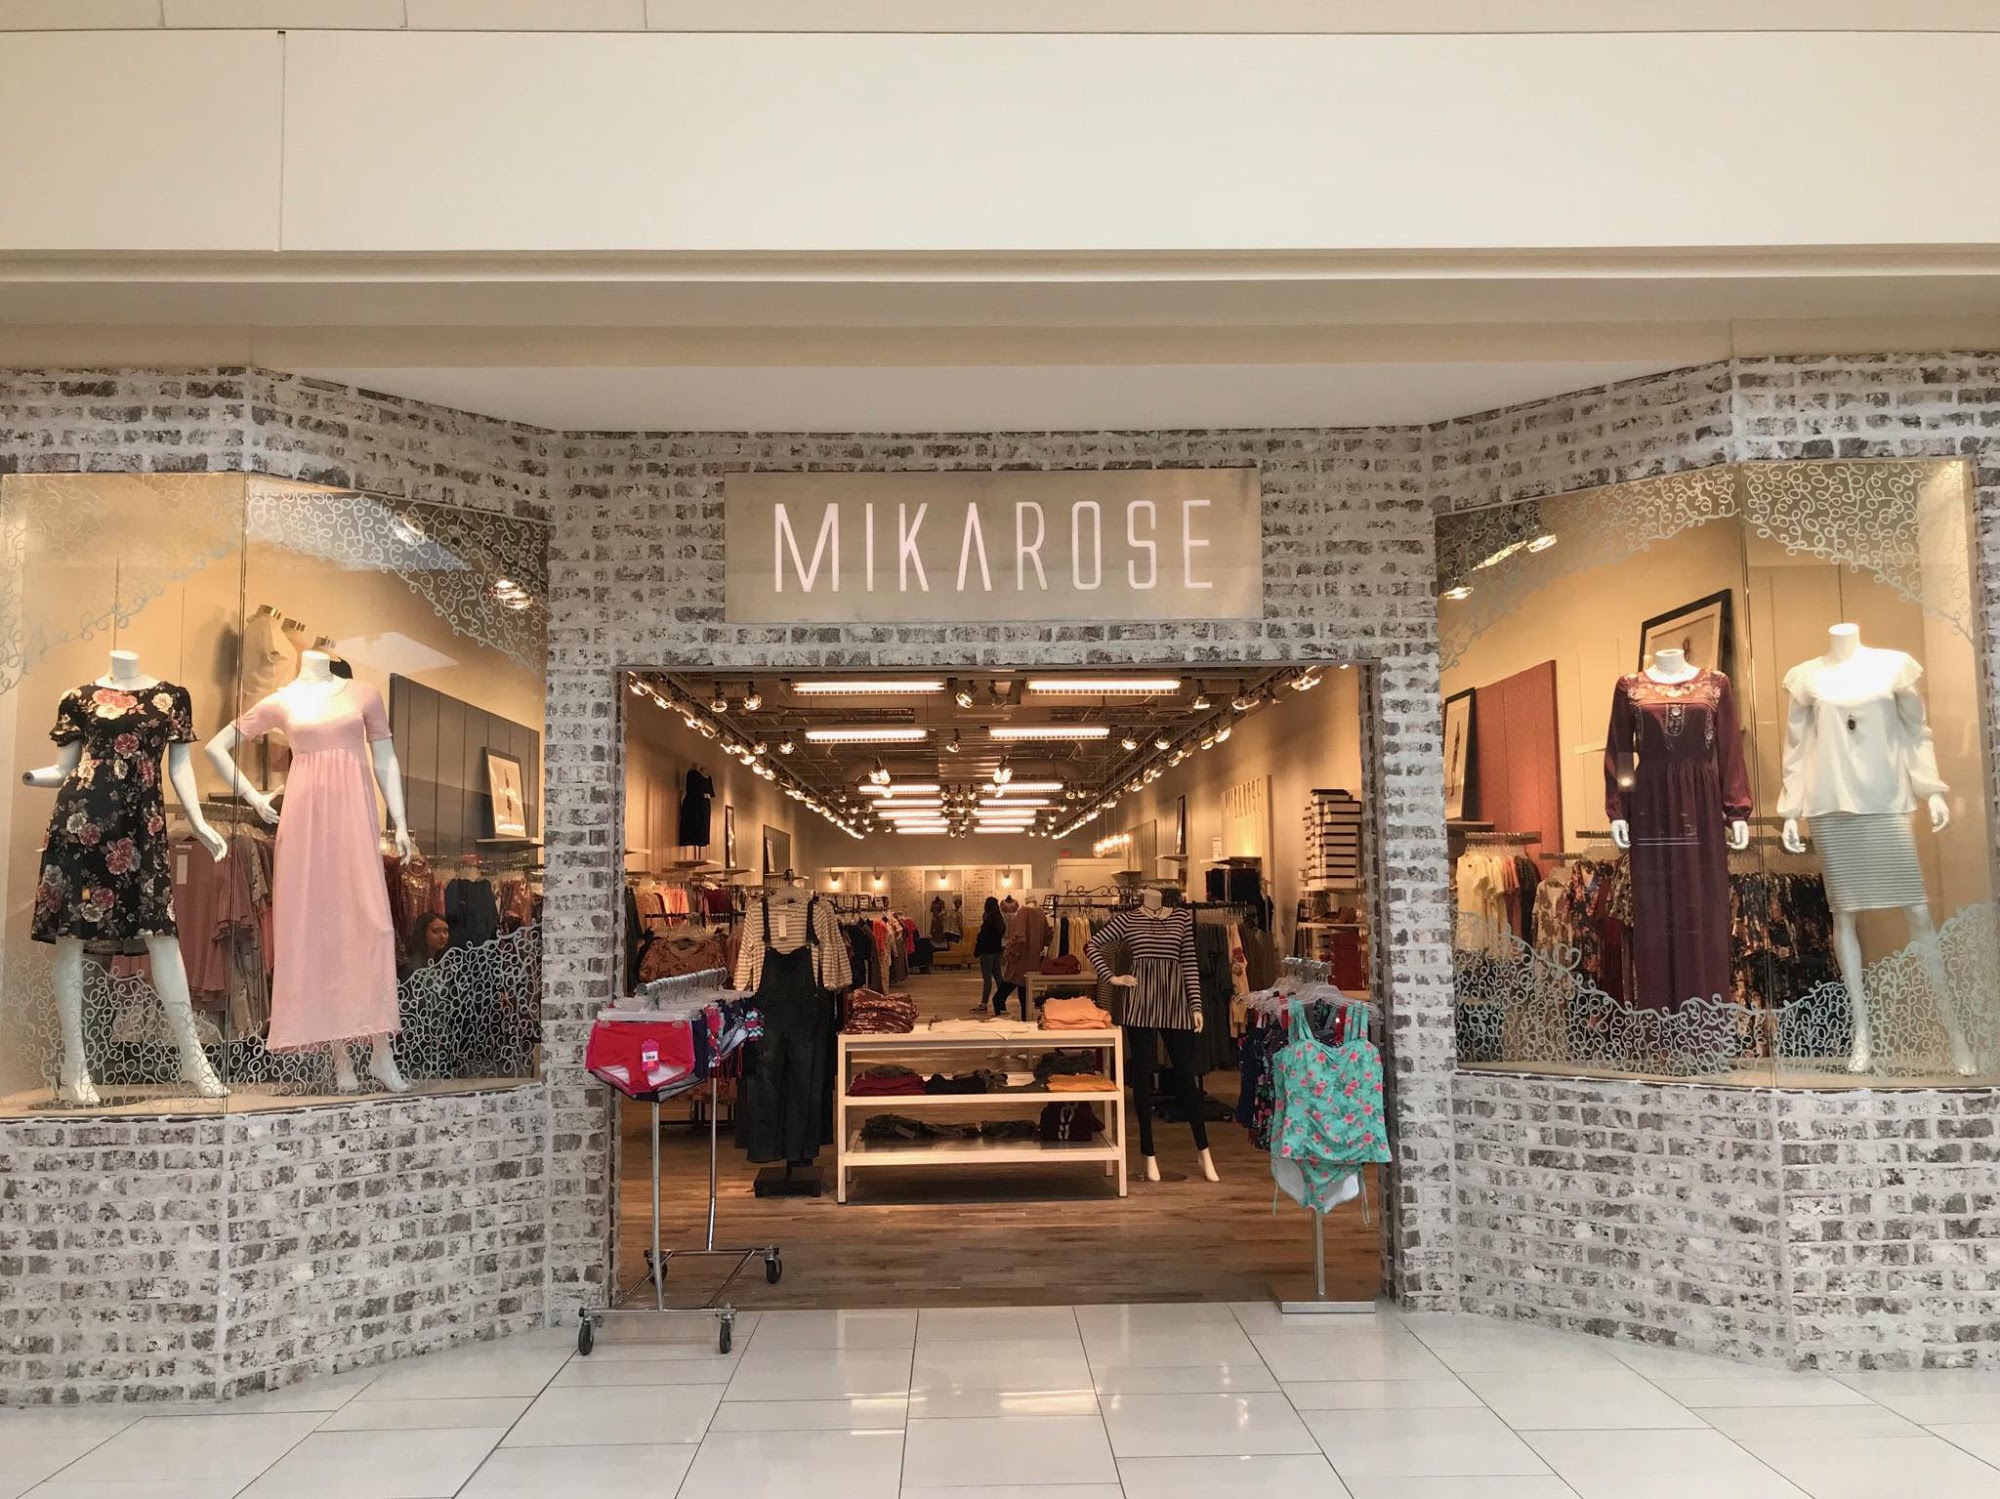 Mikarose Clothing Store